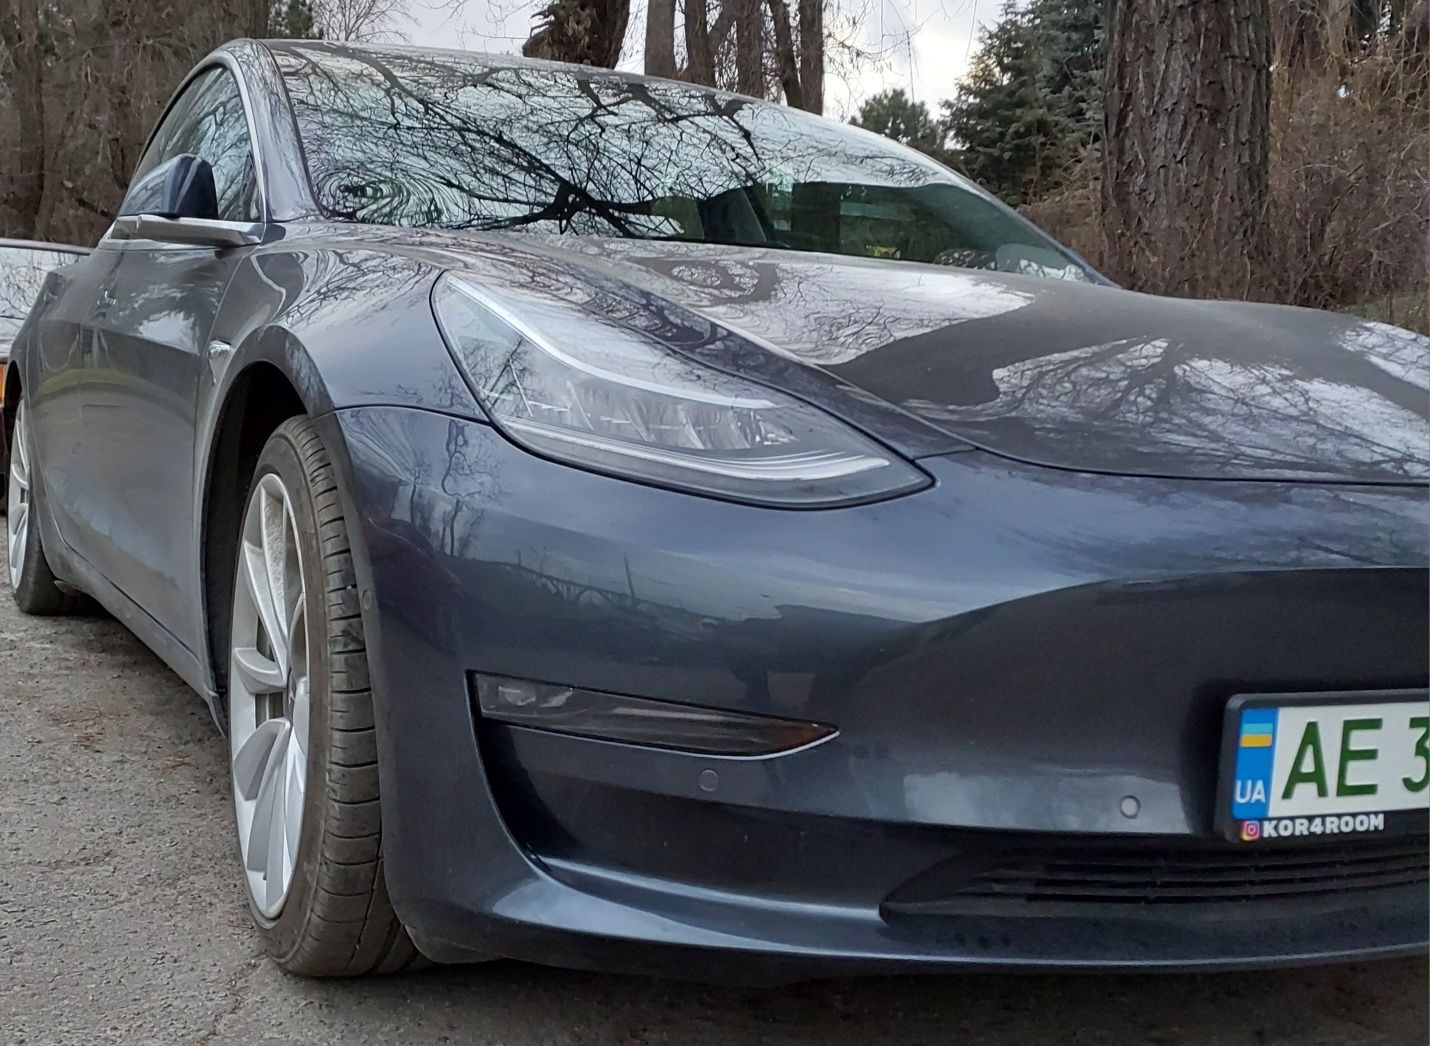 Продам Tesla M3 standard range plus